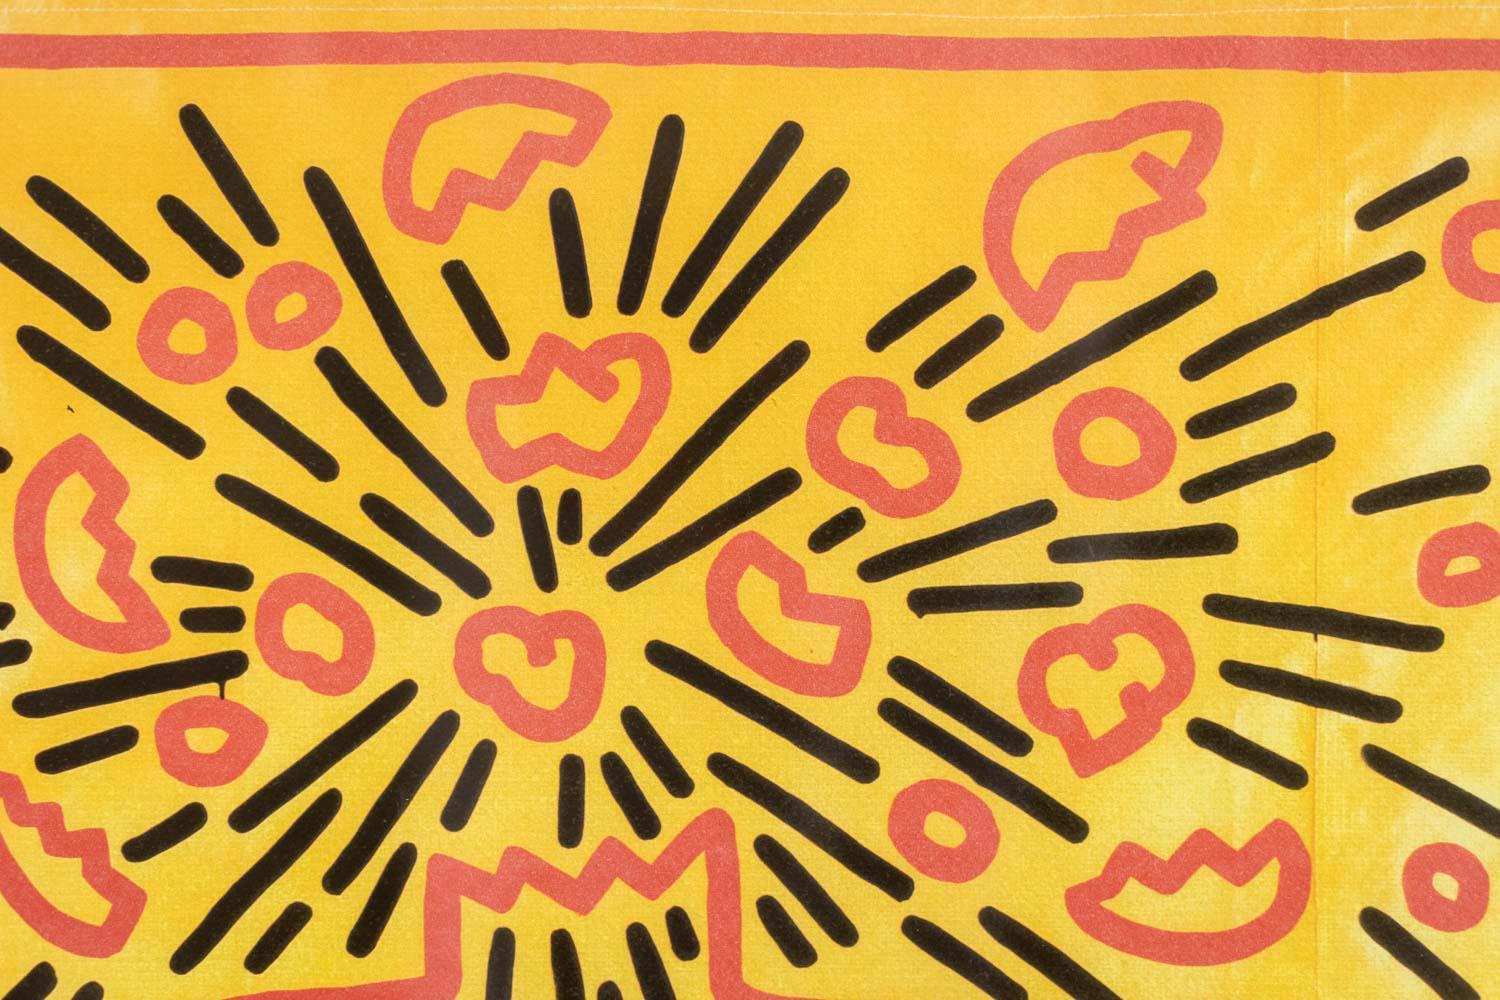 Keith Haring, signiert und nummeriert.

Abstrakter Siebdruck in Gelb-, Orange- und Schwarztönen, der eine schematische Figur andeutet, in einem Rahmen aus blonder Eiche.

Nummeriert 18/150.

Amerikanische Arbeiten aus den 1990er